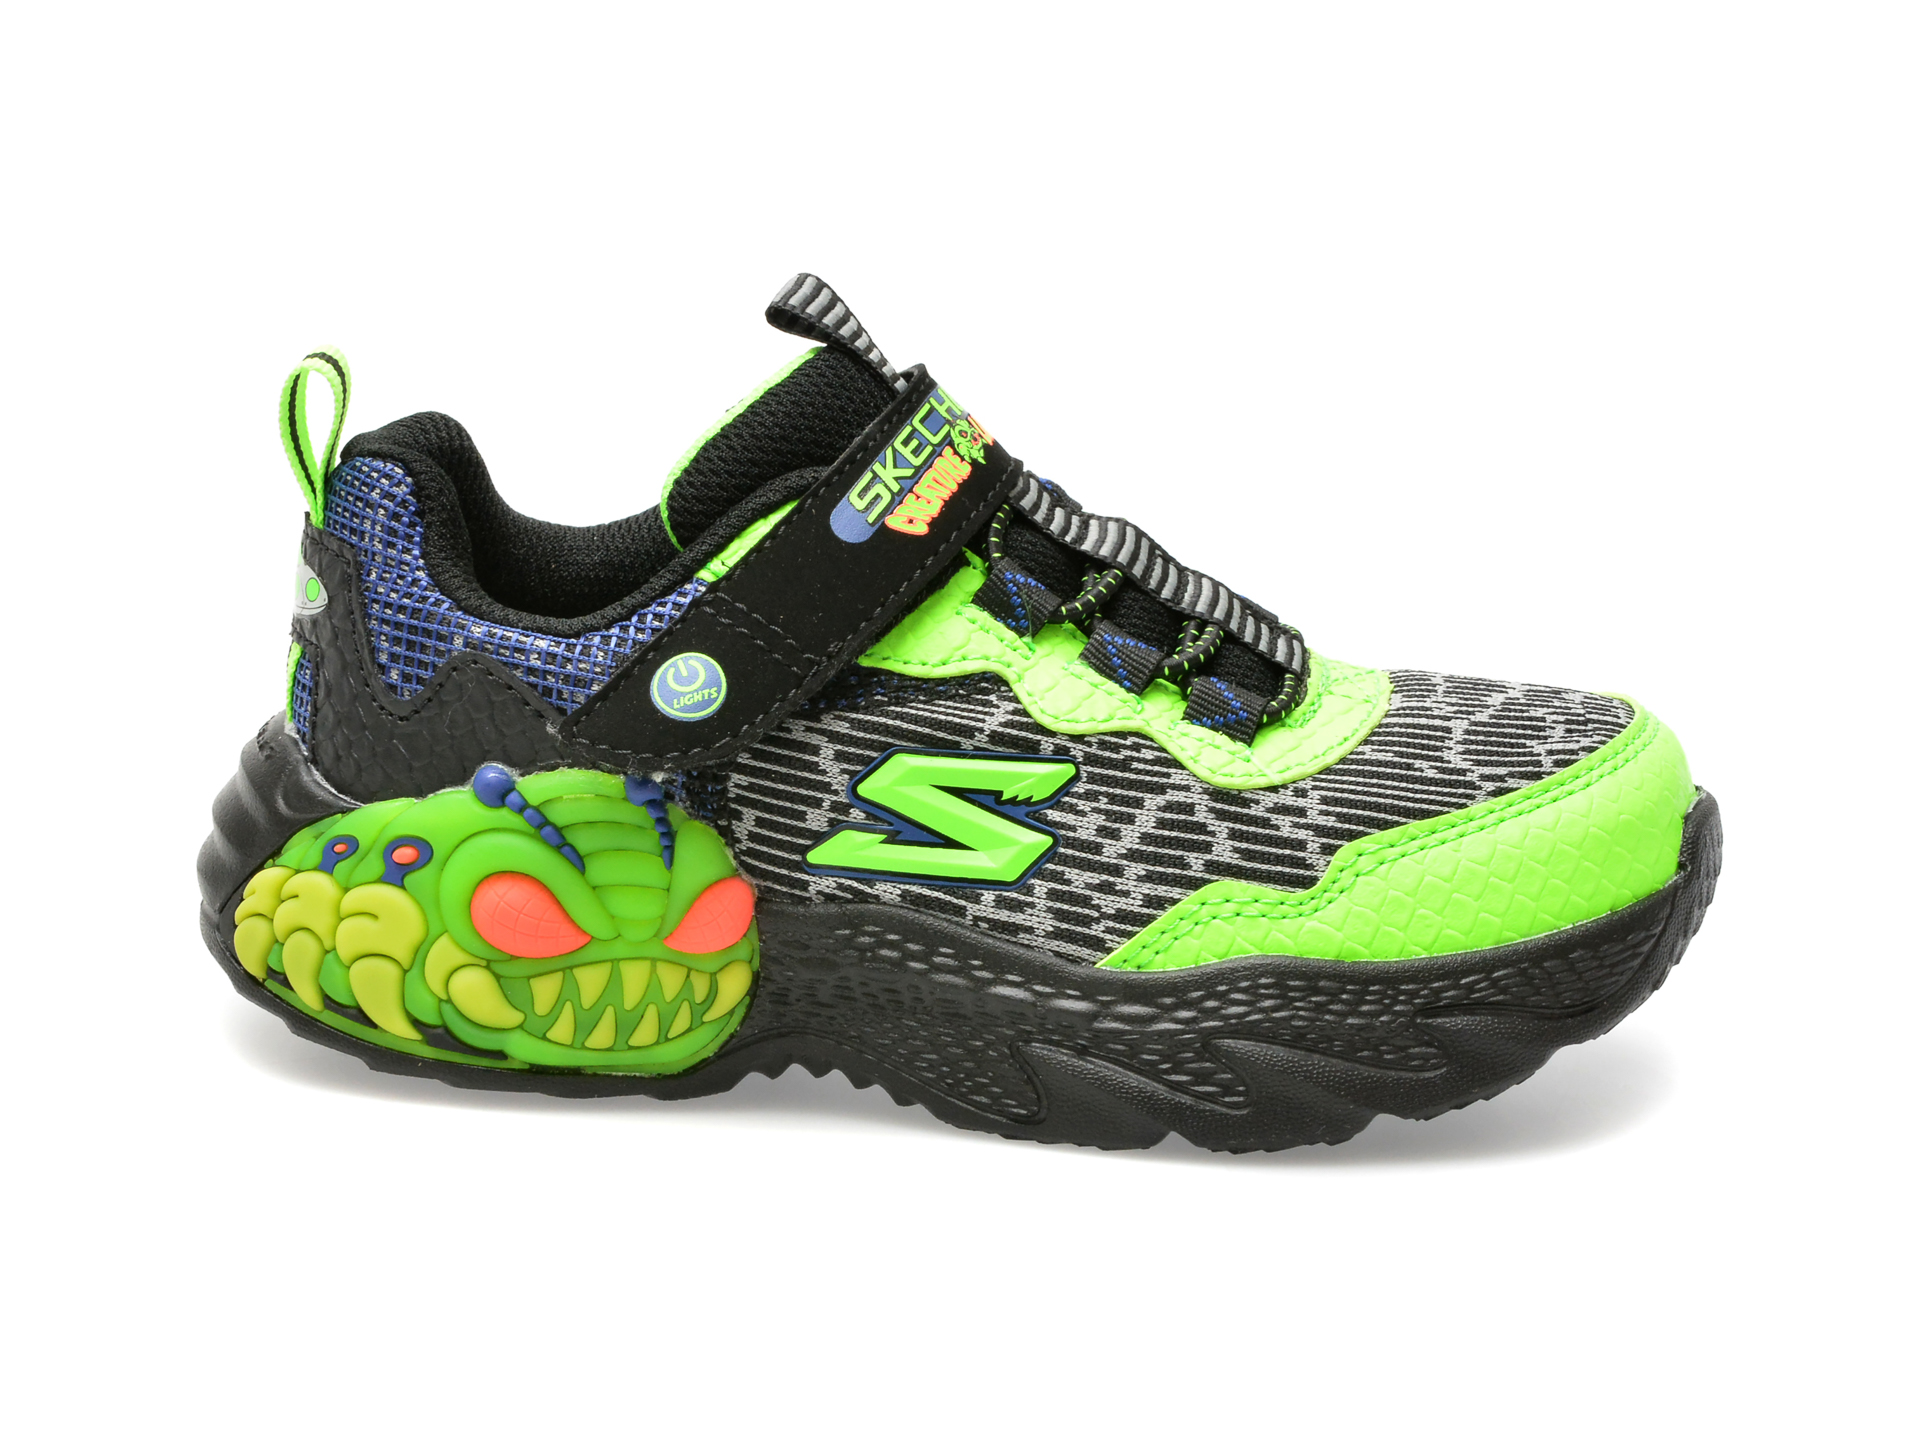 Pantofi SKECHERS negri, CREATURE-LIGHTS, din piele ecologica